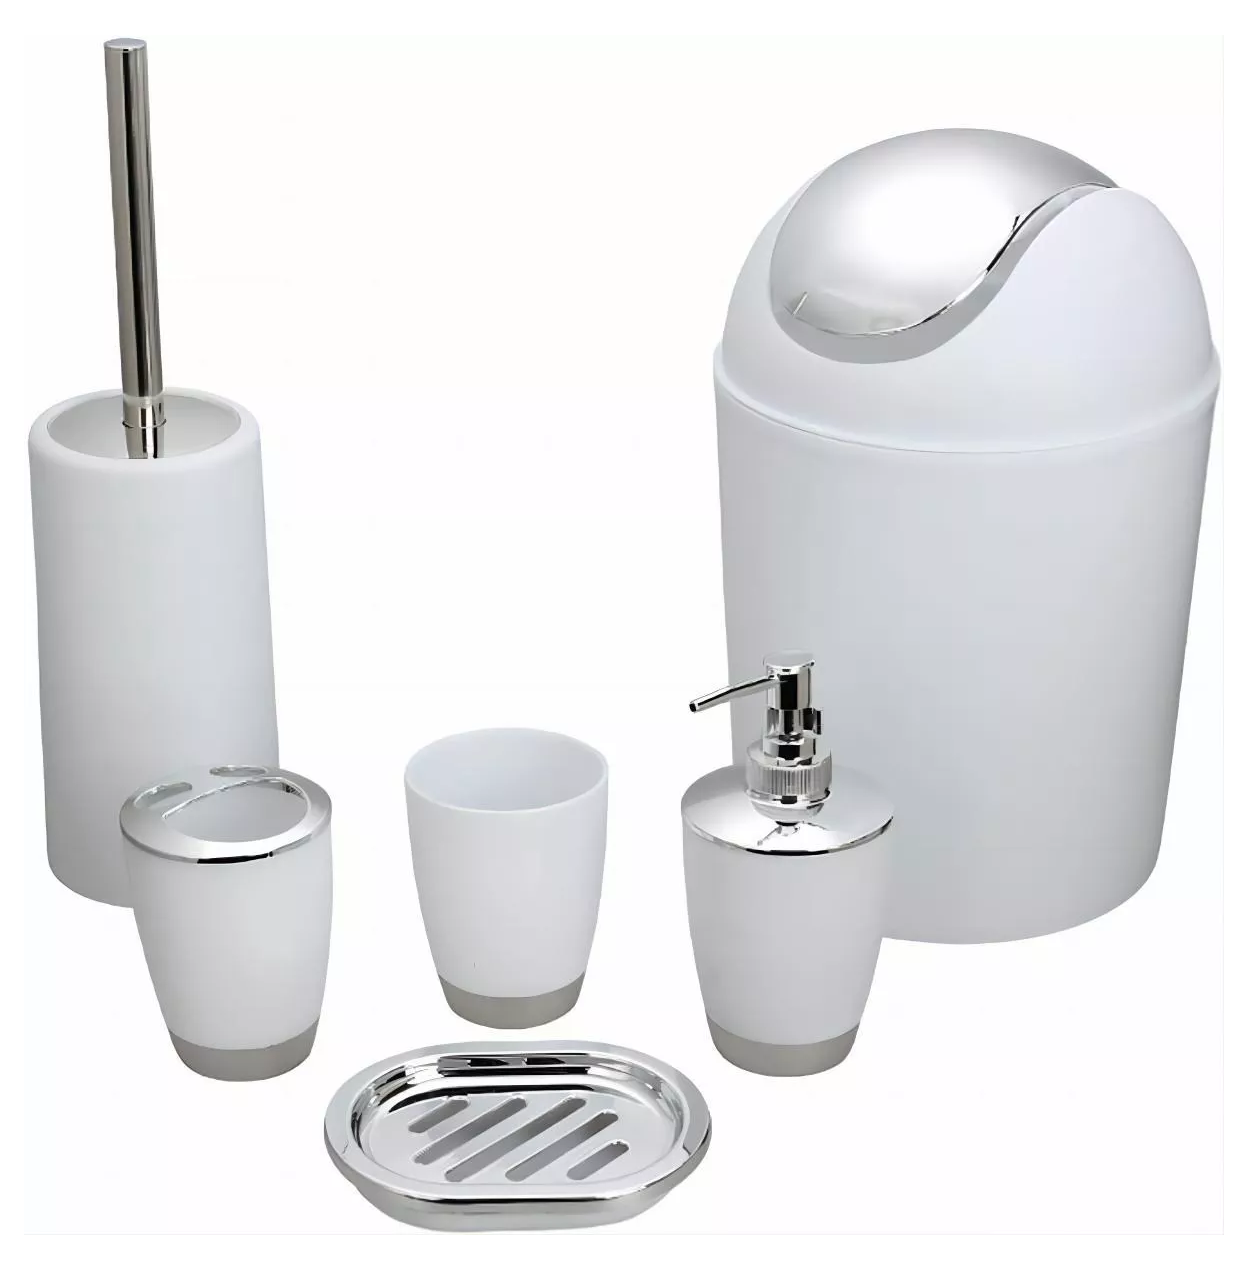 5 uds accesorio de baño taza para cepillo de jabonera baño en casa